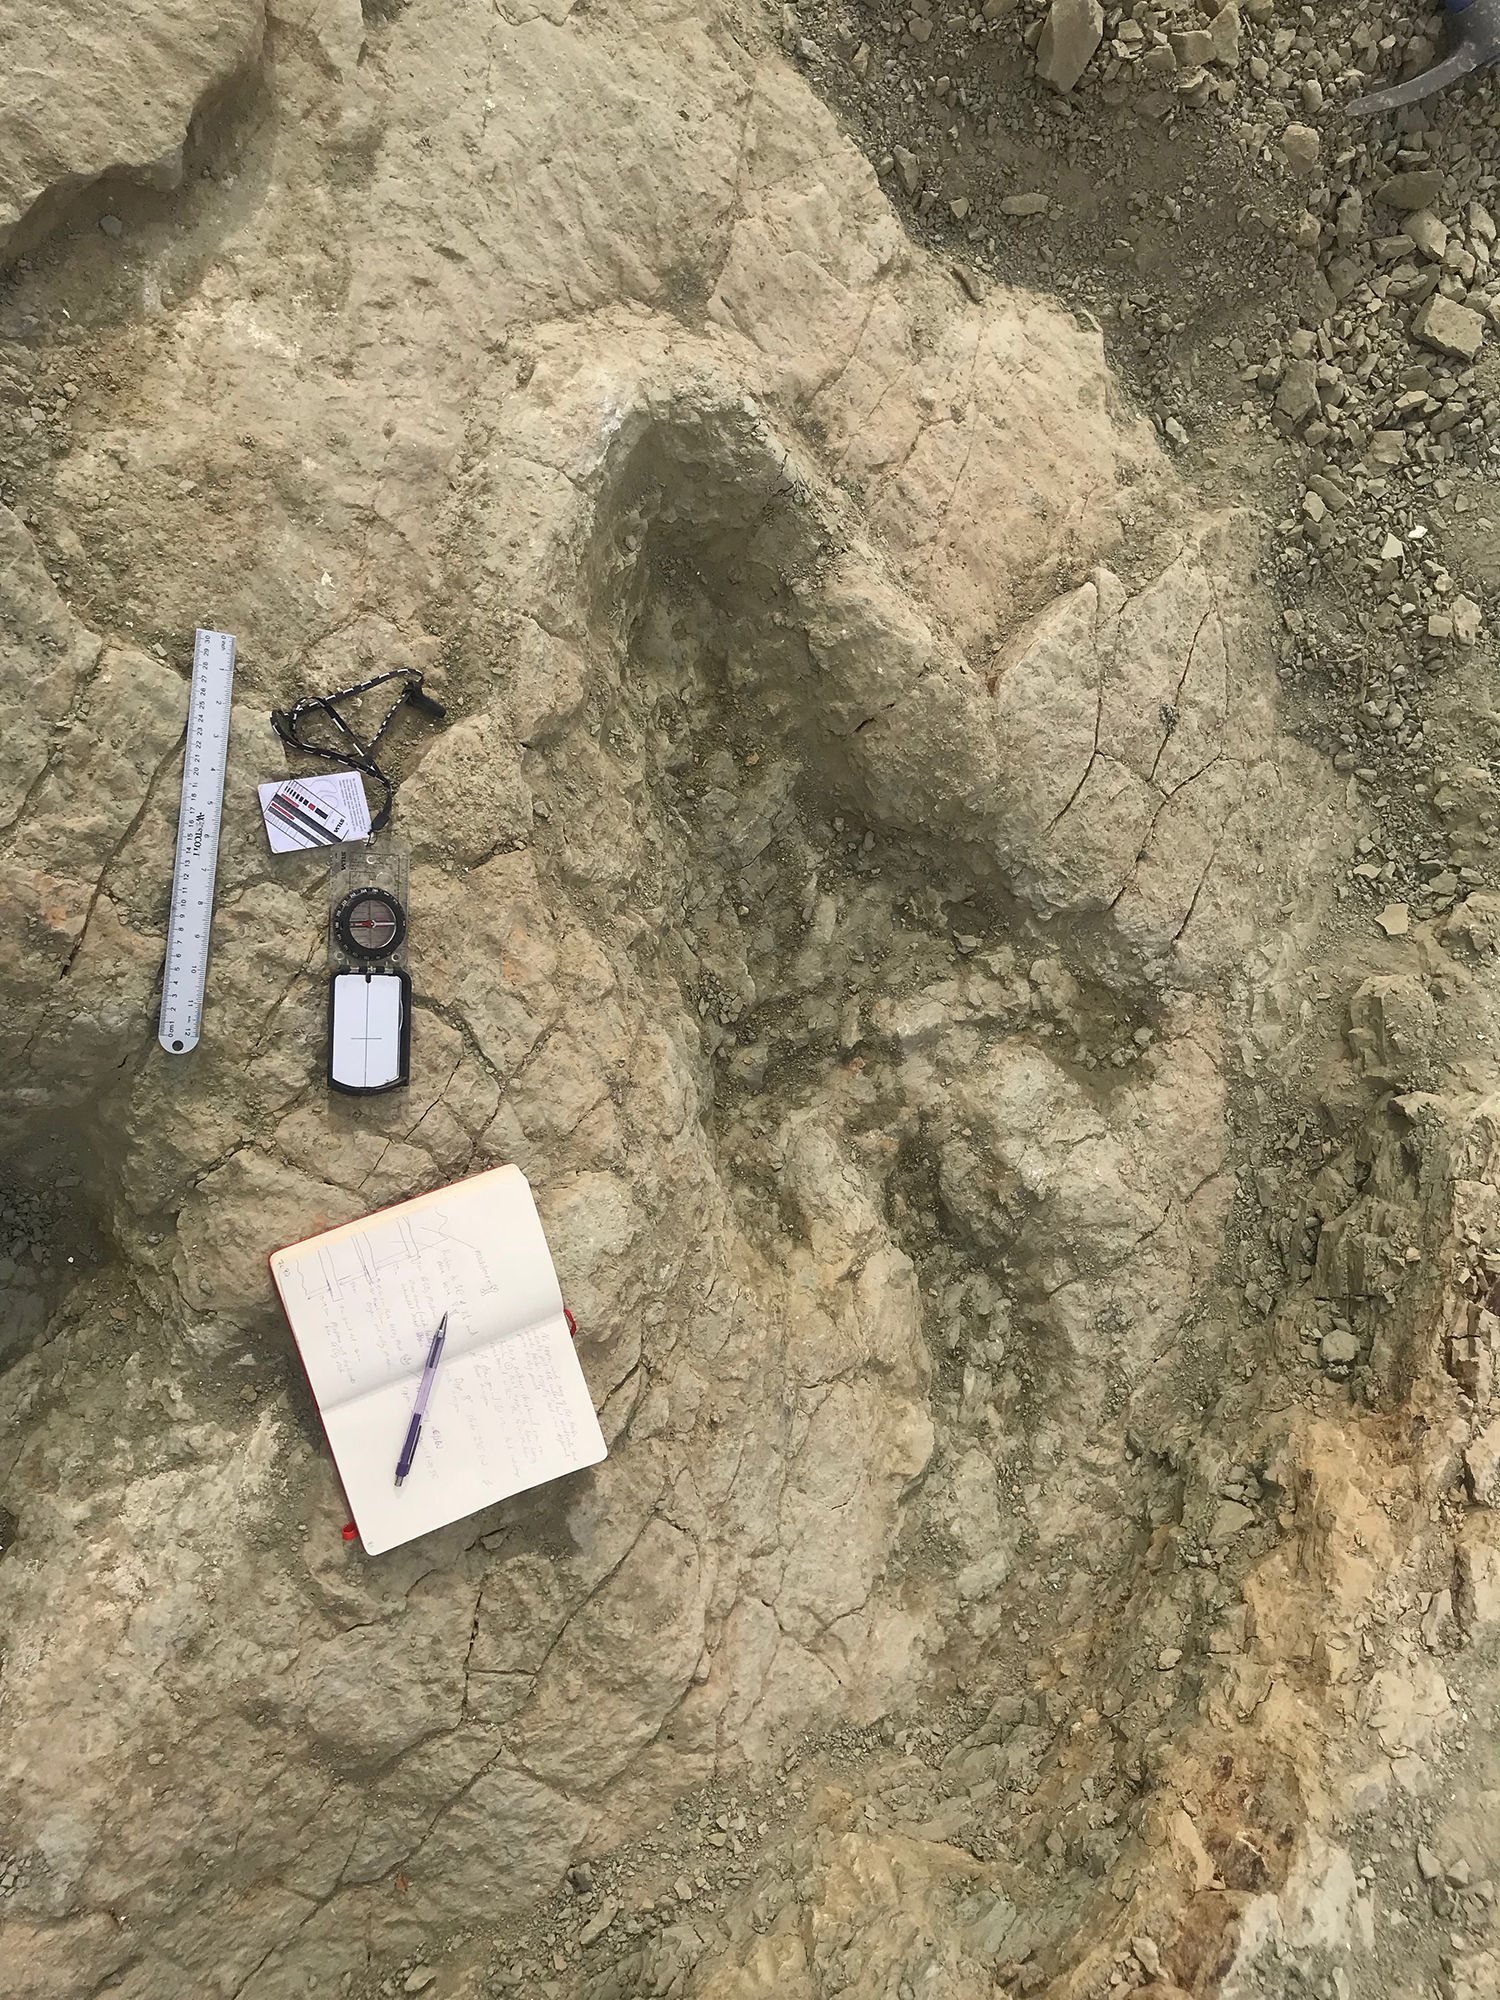 Theropod's footprint